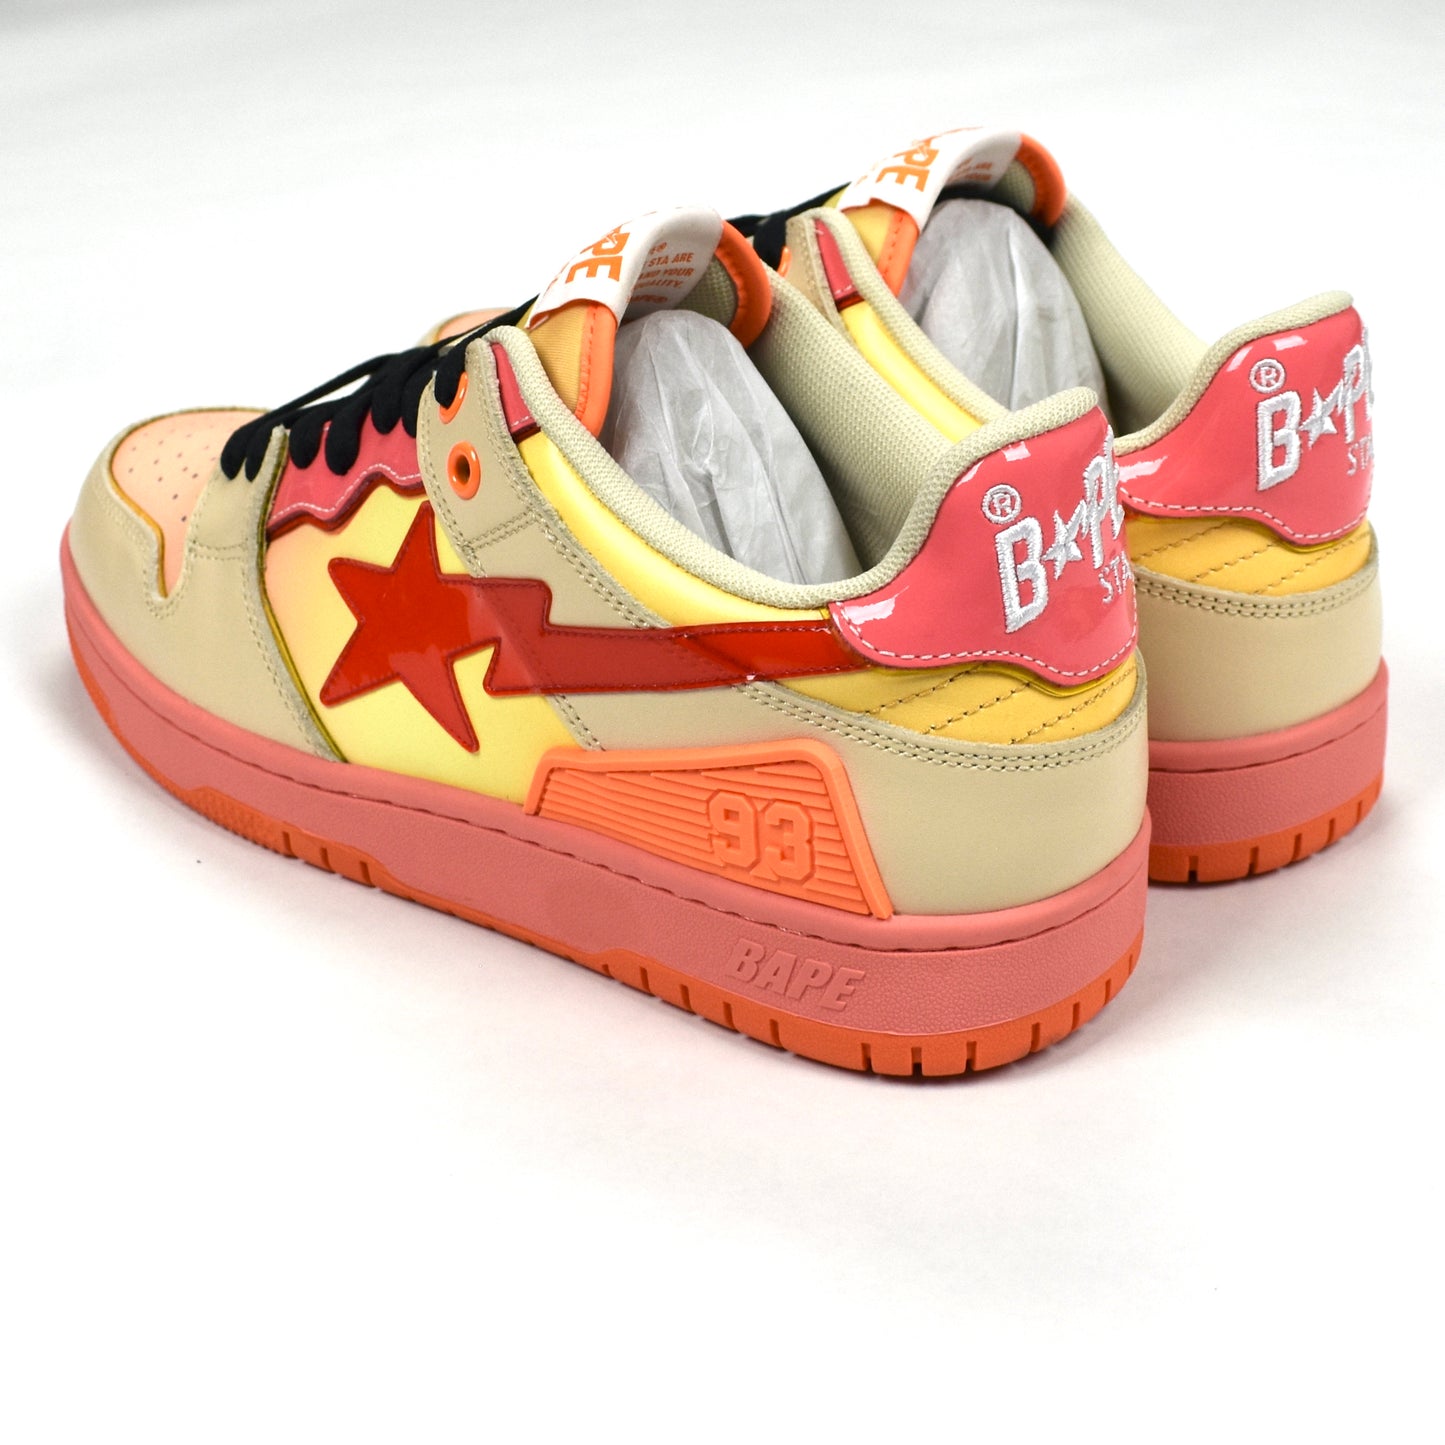 Bape - SK8 STA Sneakers (Orange/Pink/Tan)